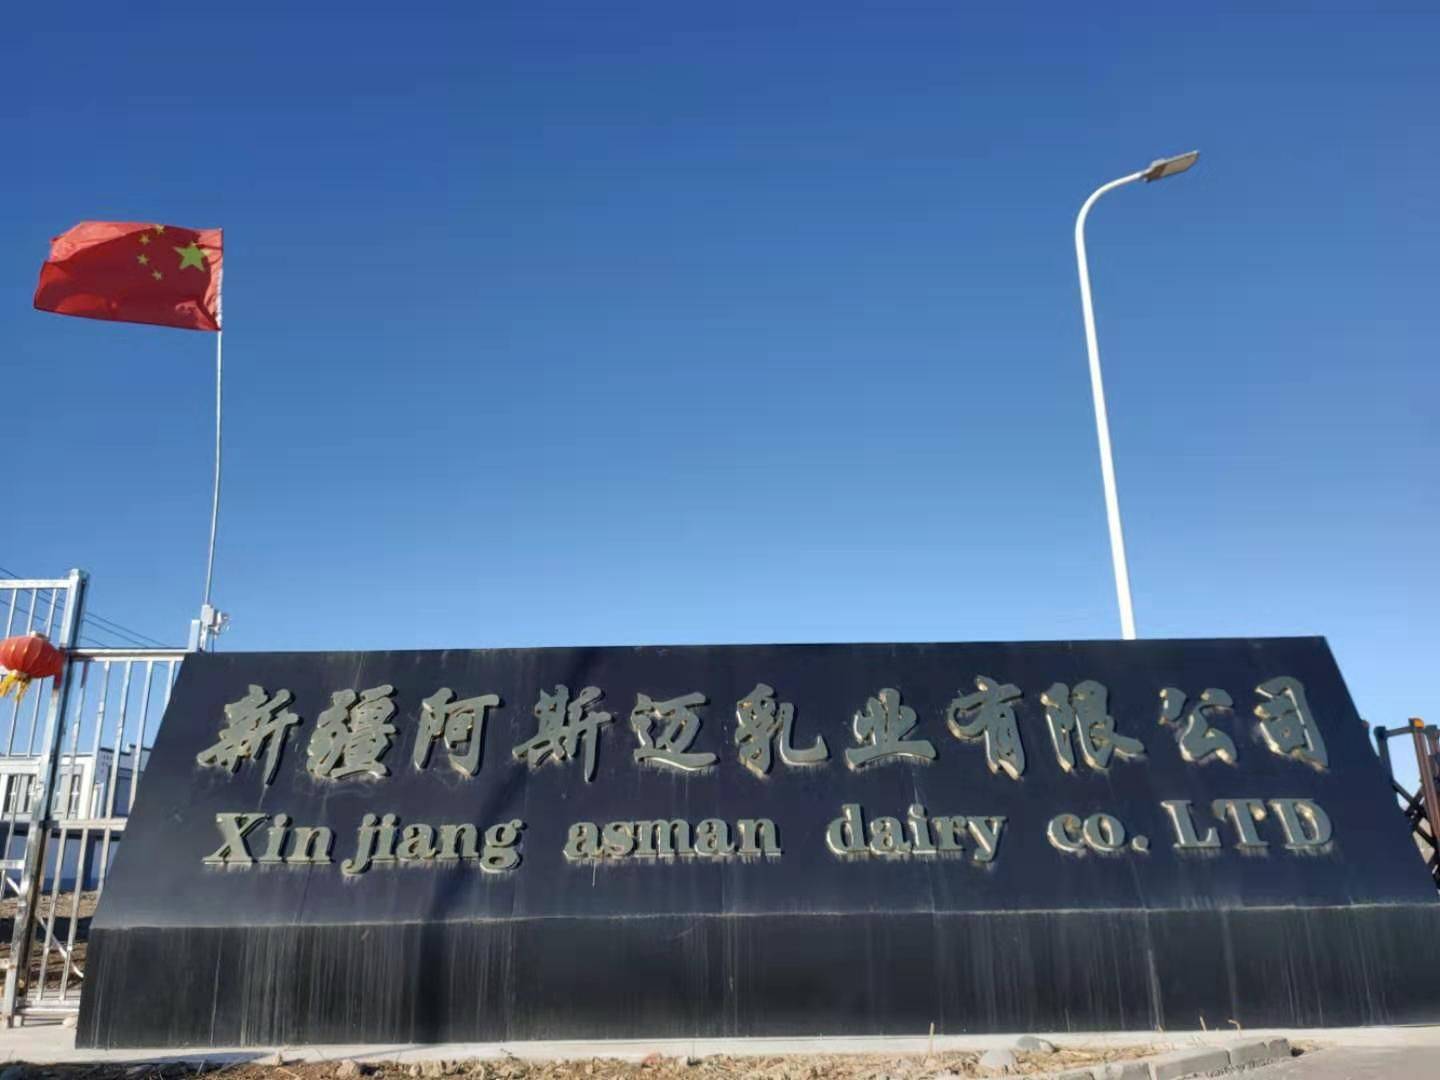   Xinjiang Asmai Dairy Co., Ltd